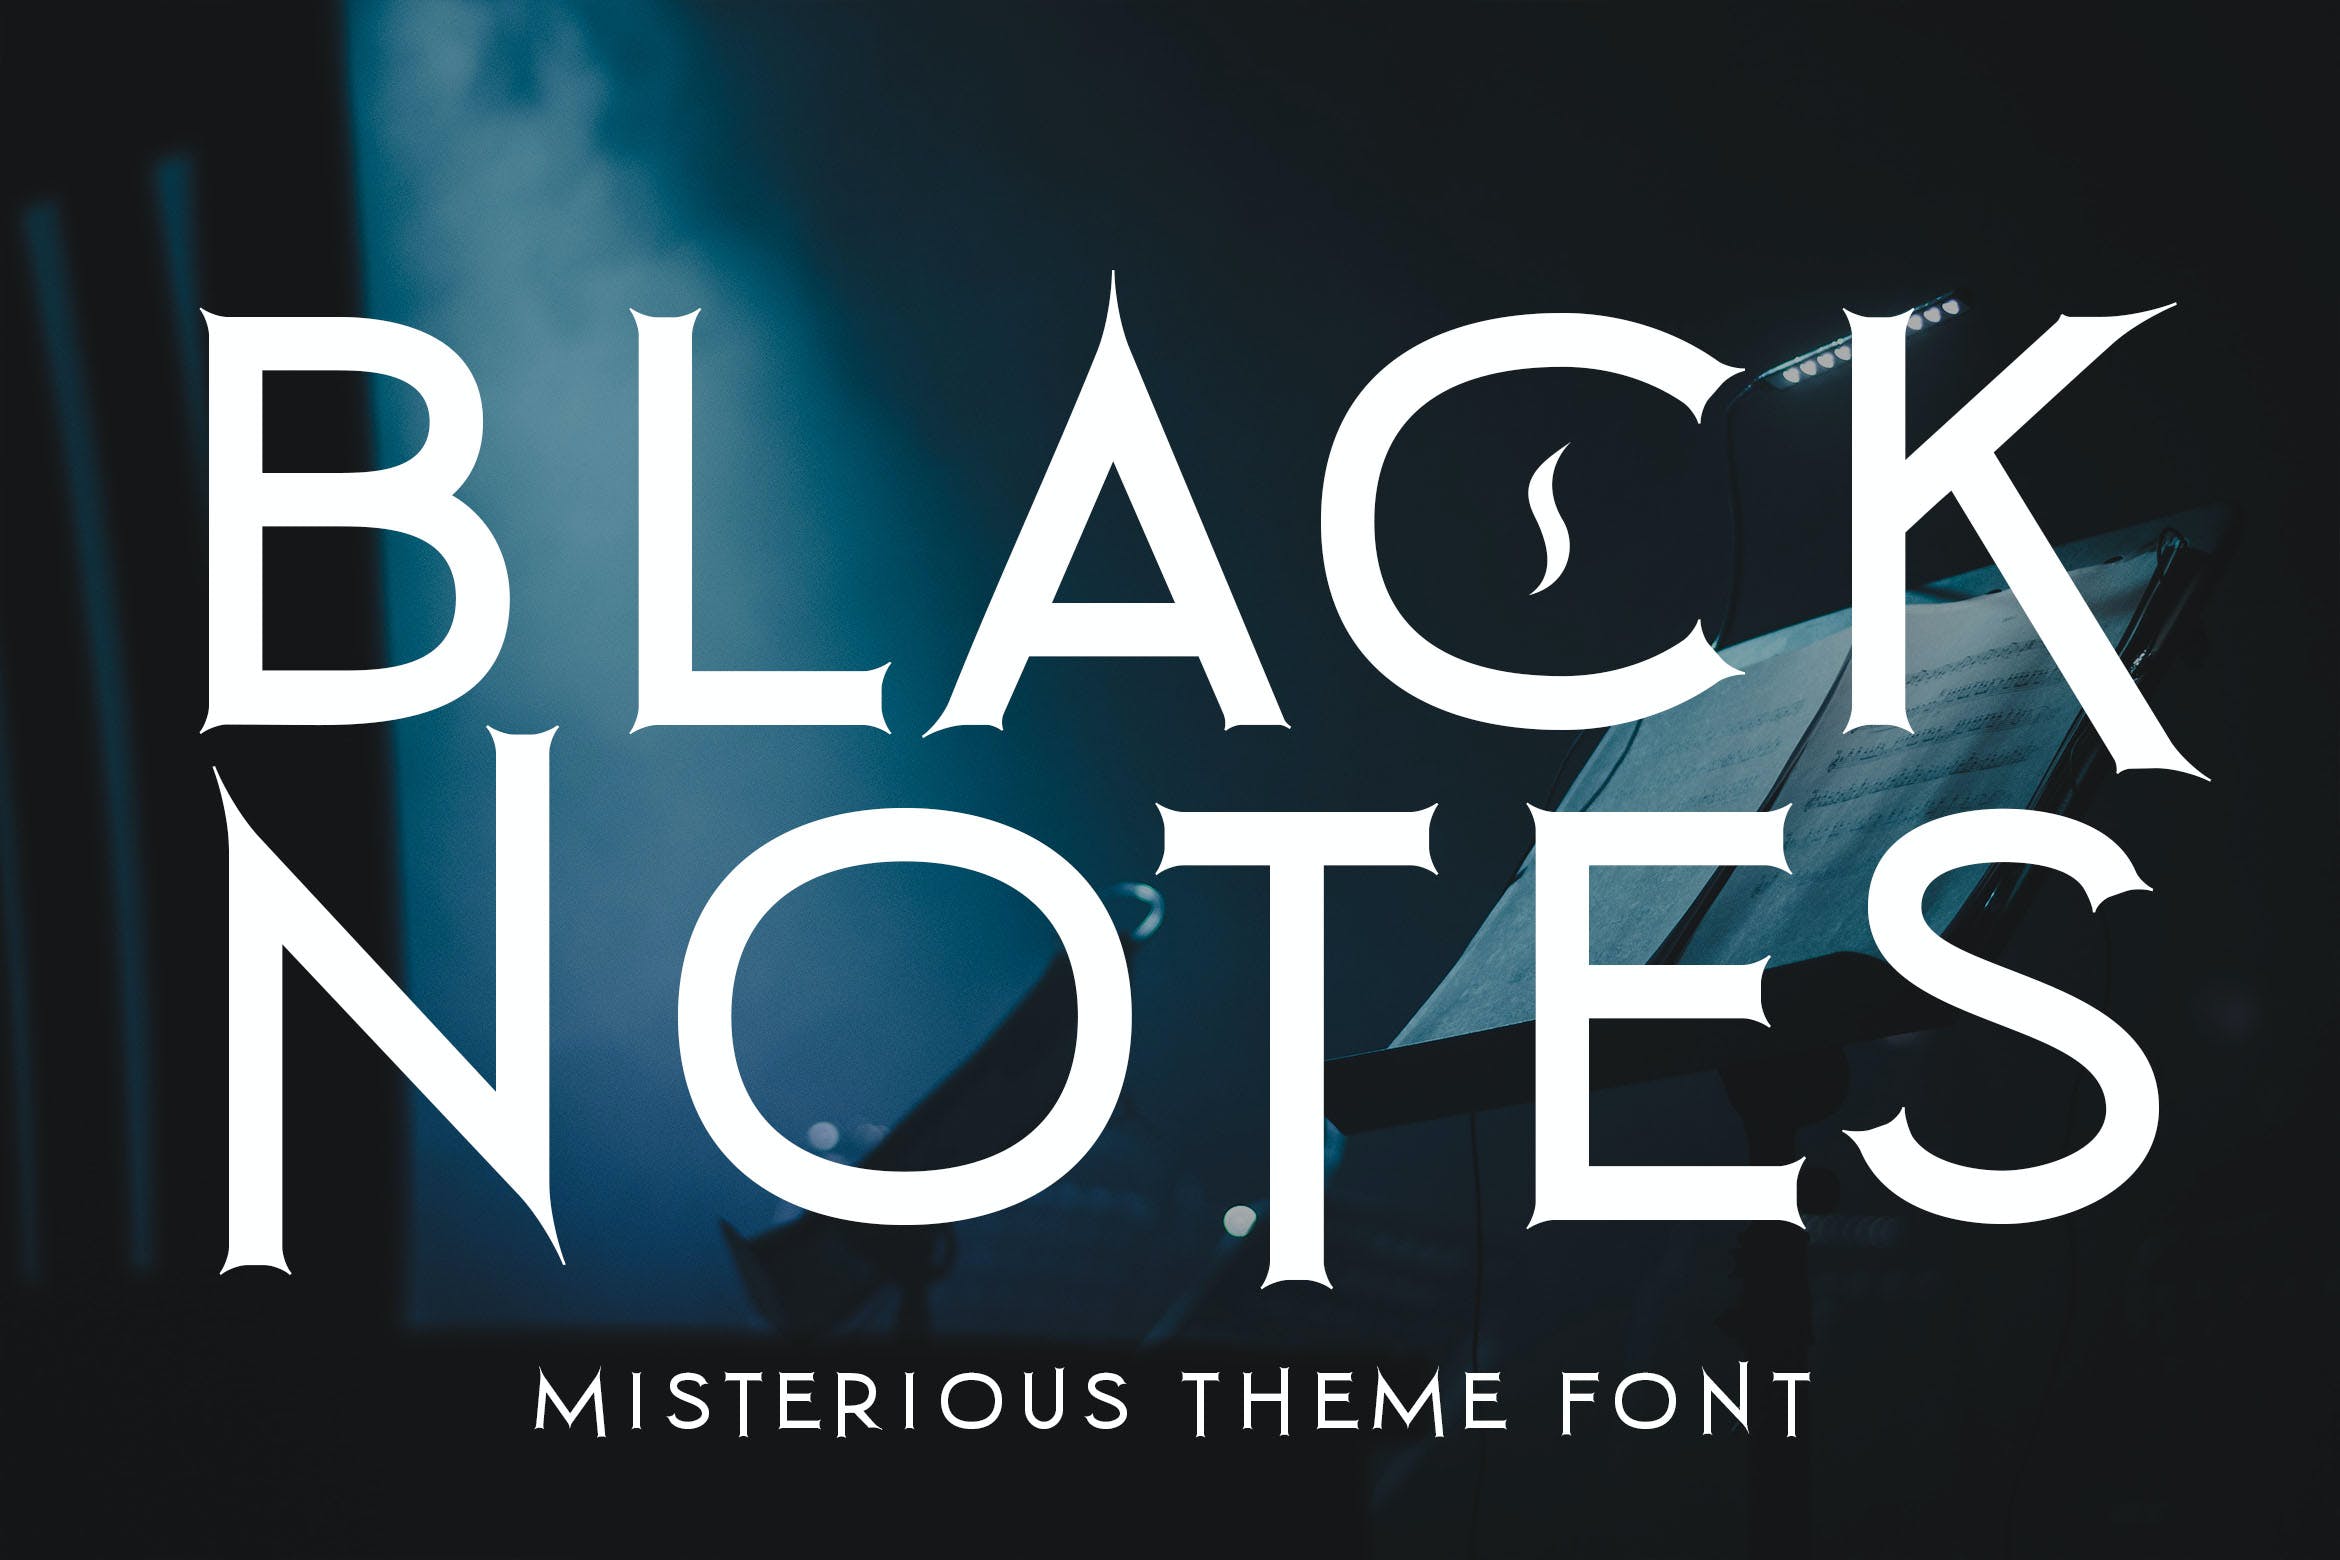 黑色标准无衬线英文字体 Black Notes 设计素材 第1张